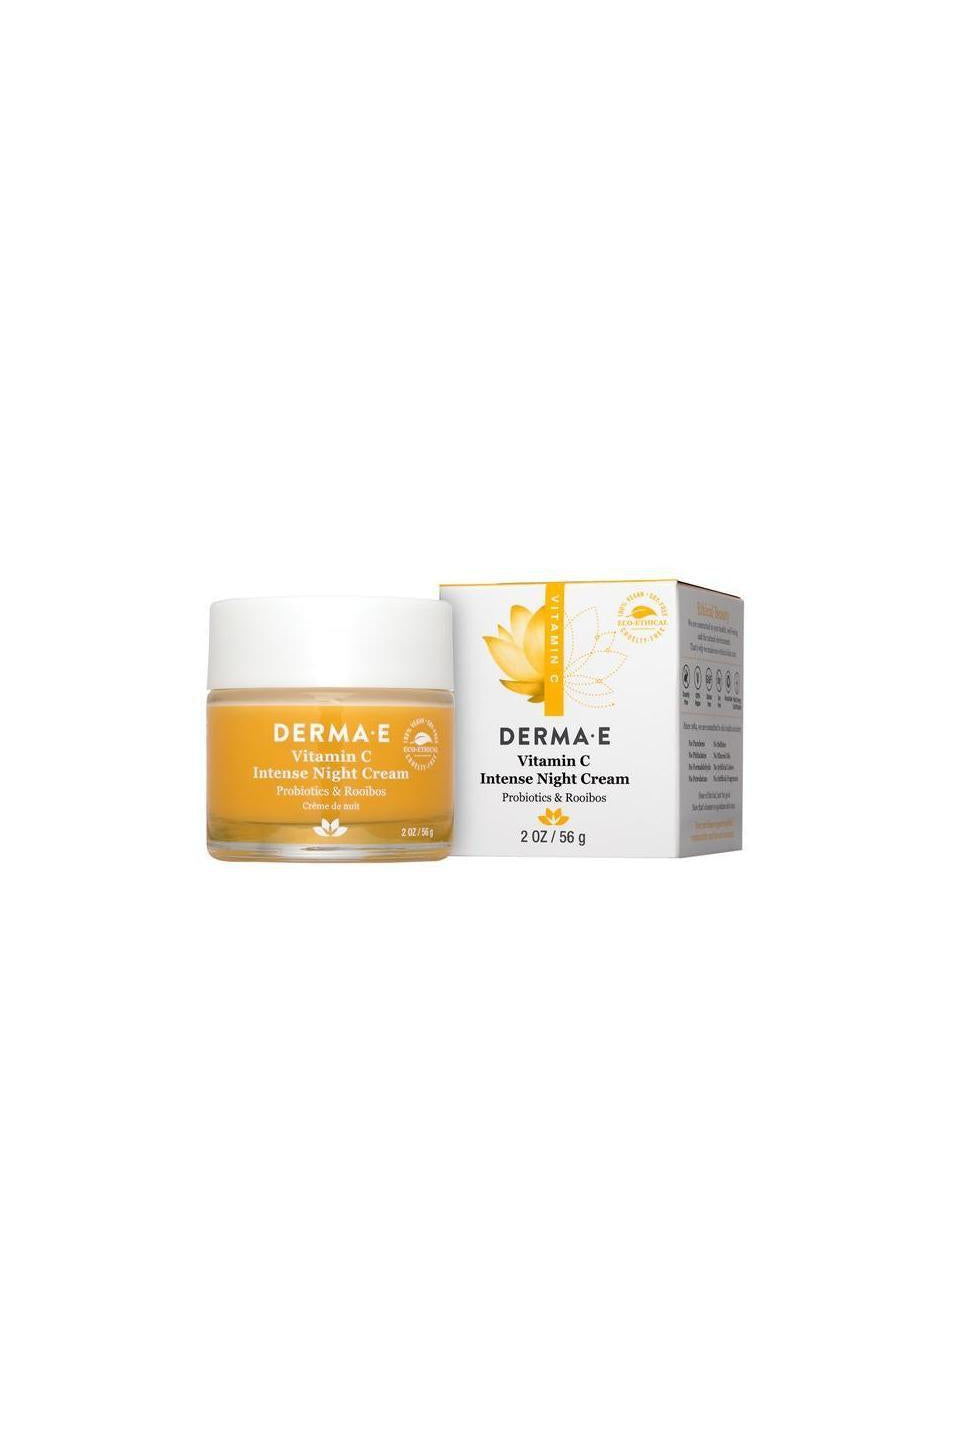 Derma E Vitamin C Intense Night Cream (Probiotics & Rooibos) 56g